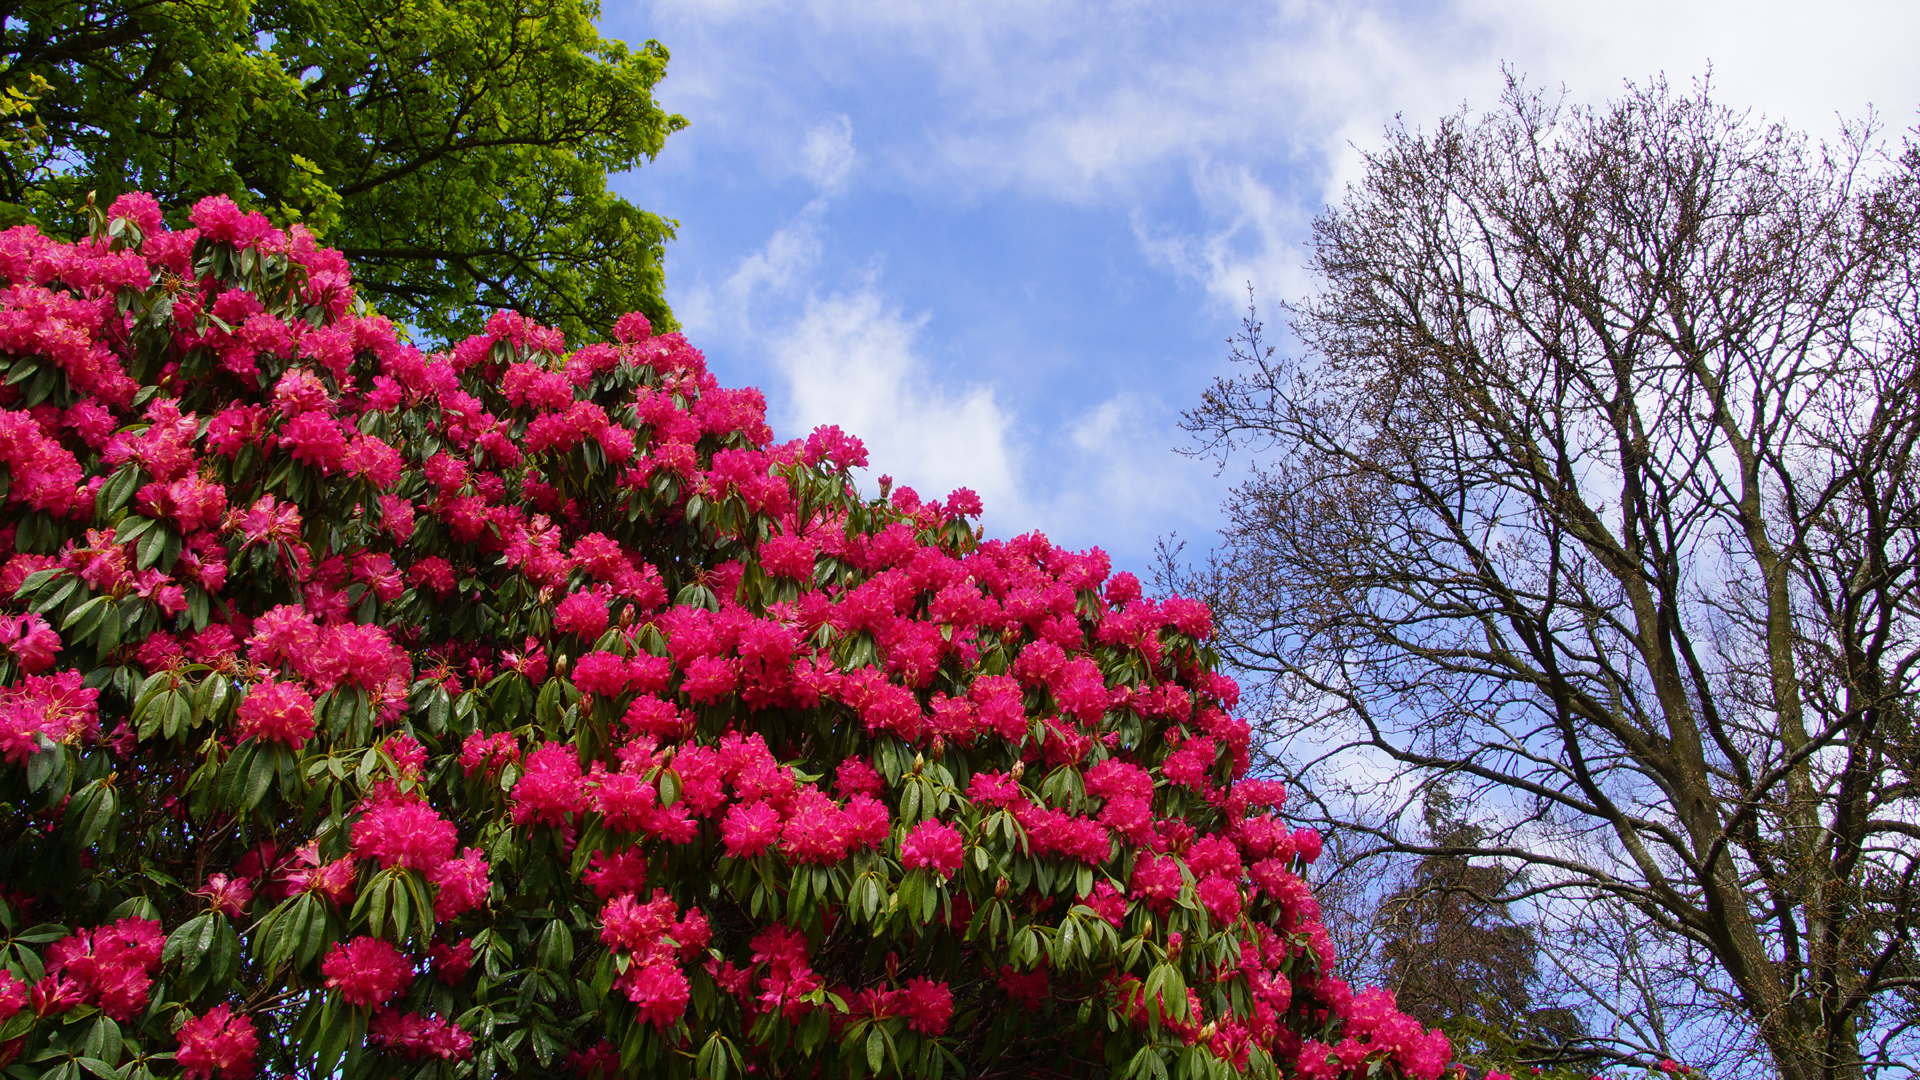 Fotostrecke Frühling Abbildung 20: Rhododendronblüte in Nordirland